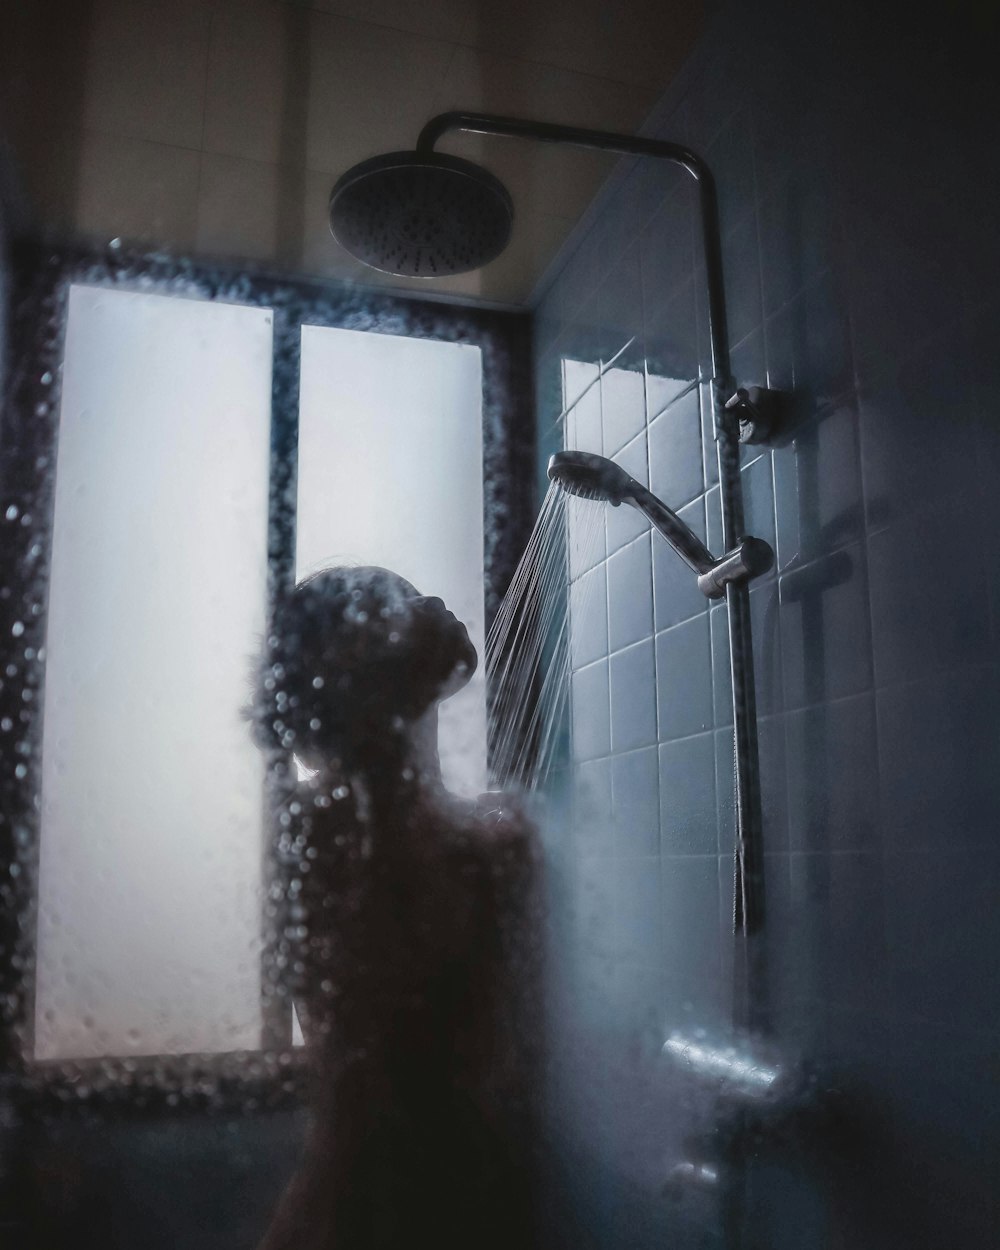 Más de 500 imágenes de ducha [HD] | Descargar imágenes gratis en Unsplash